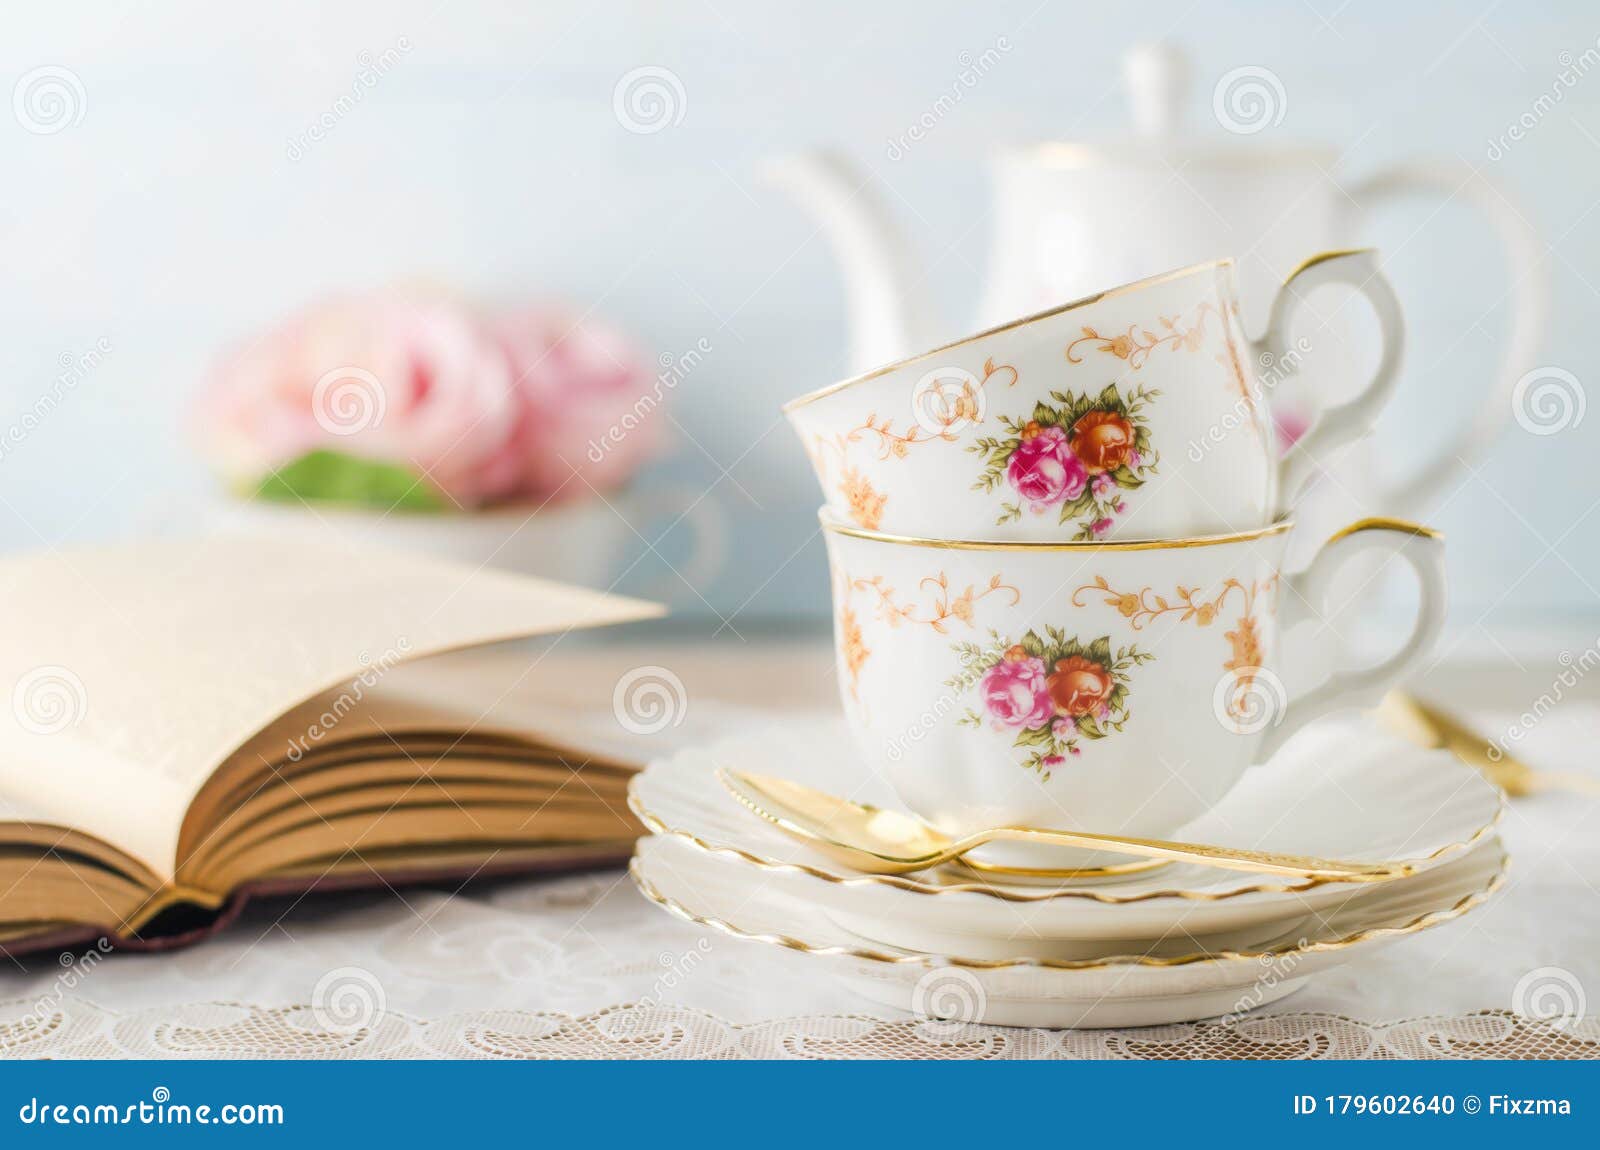 Jogo de chá com bule e bule com flor.